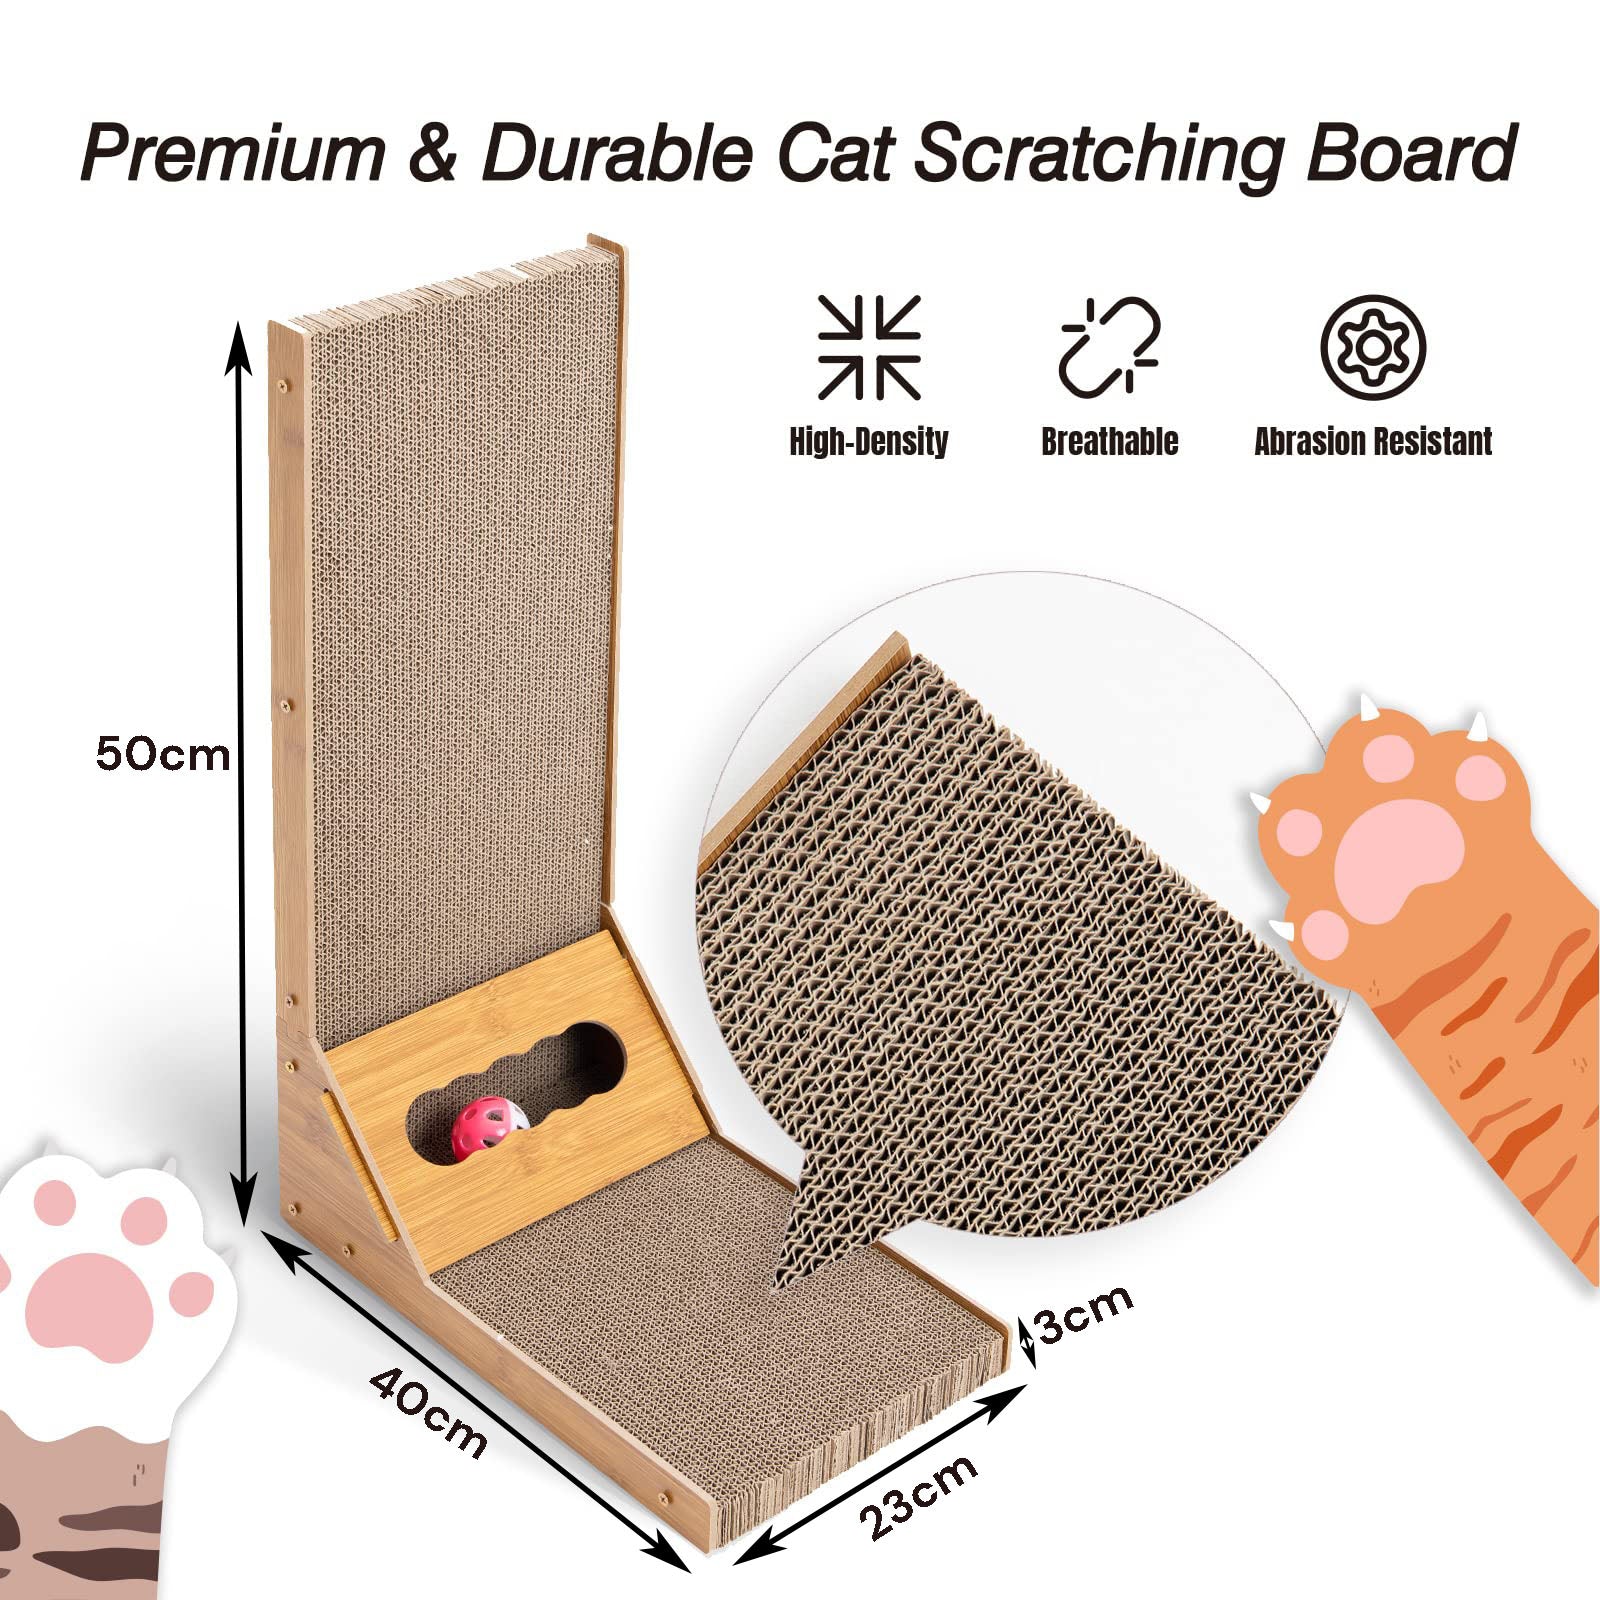 Cat Scratcher Pad L Shape Scratching Board Post Cardboard Cat Scratcher Indoor Kitten Scratch